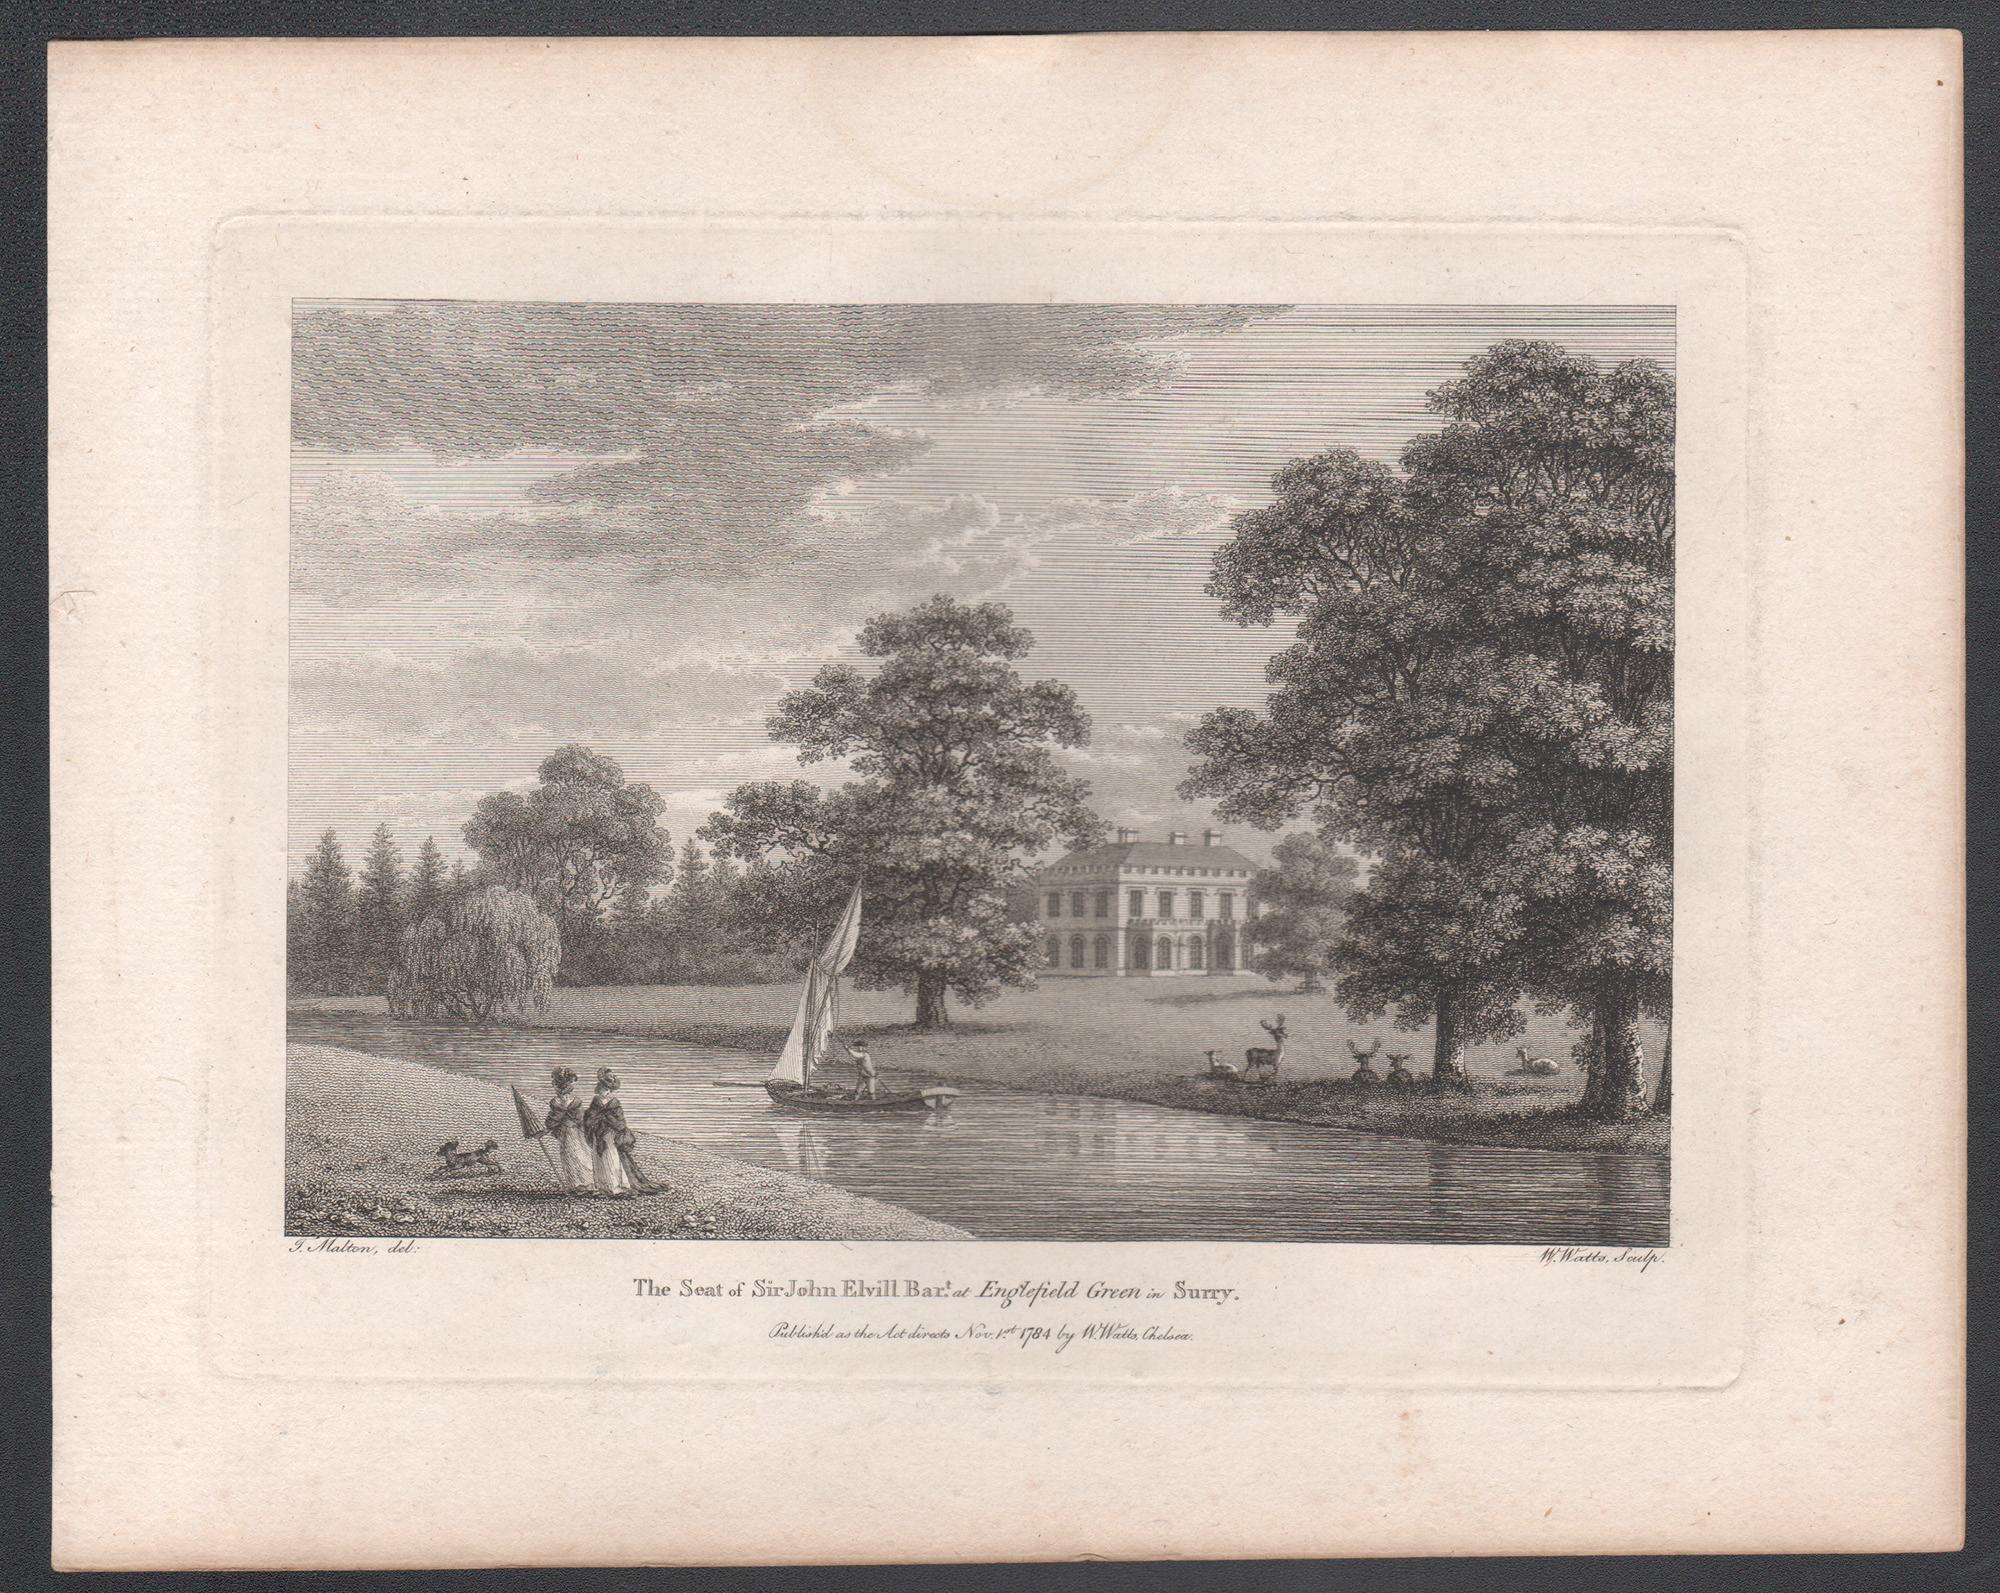 Englefield Green, Surrey, englische Landhausgravur des 18. Jahrhunderts, 1784 – Print von William Watts